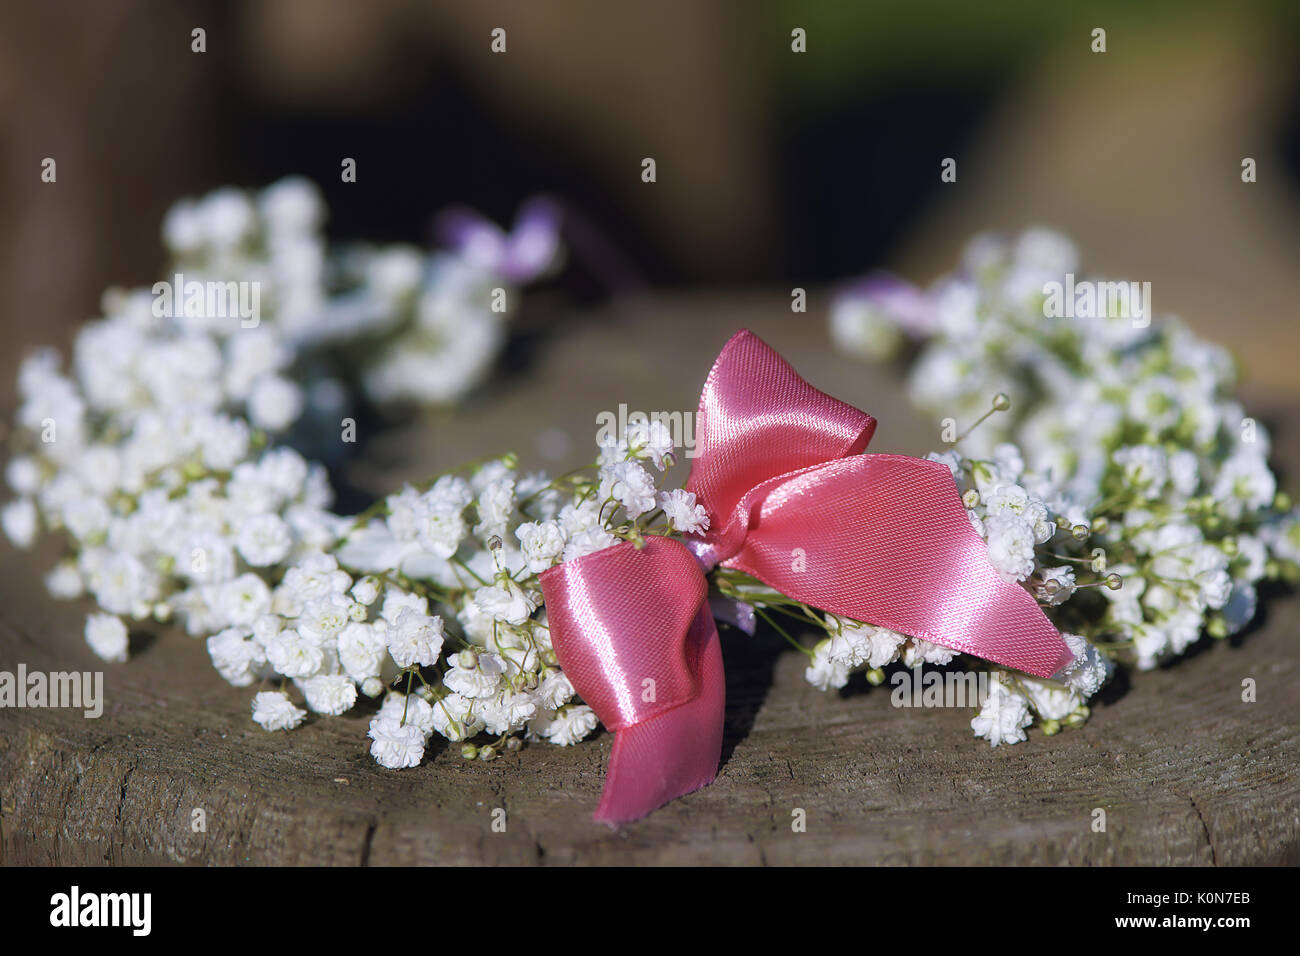 Fiore nuziale corona di bimbo di respiro con piccolo fiocco rosa impostato su un ceppo di albero, rustico minimalista tema nozze con profondità di campo Foto Stock